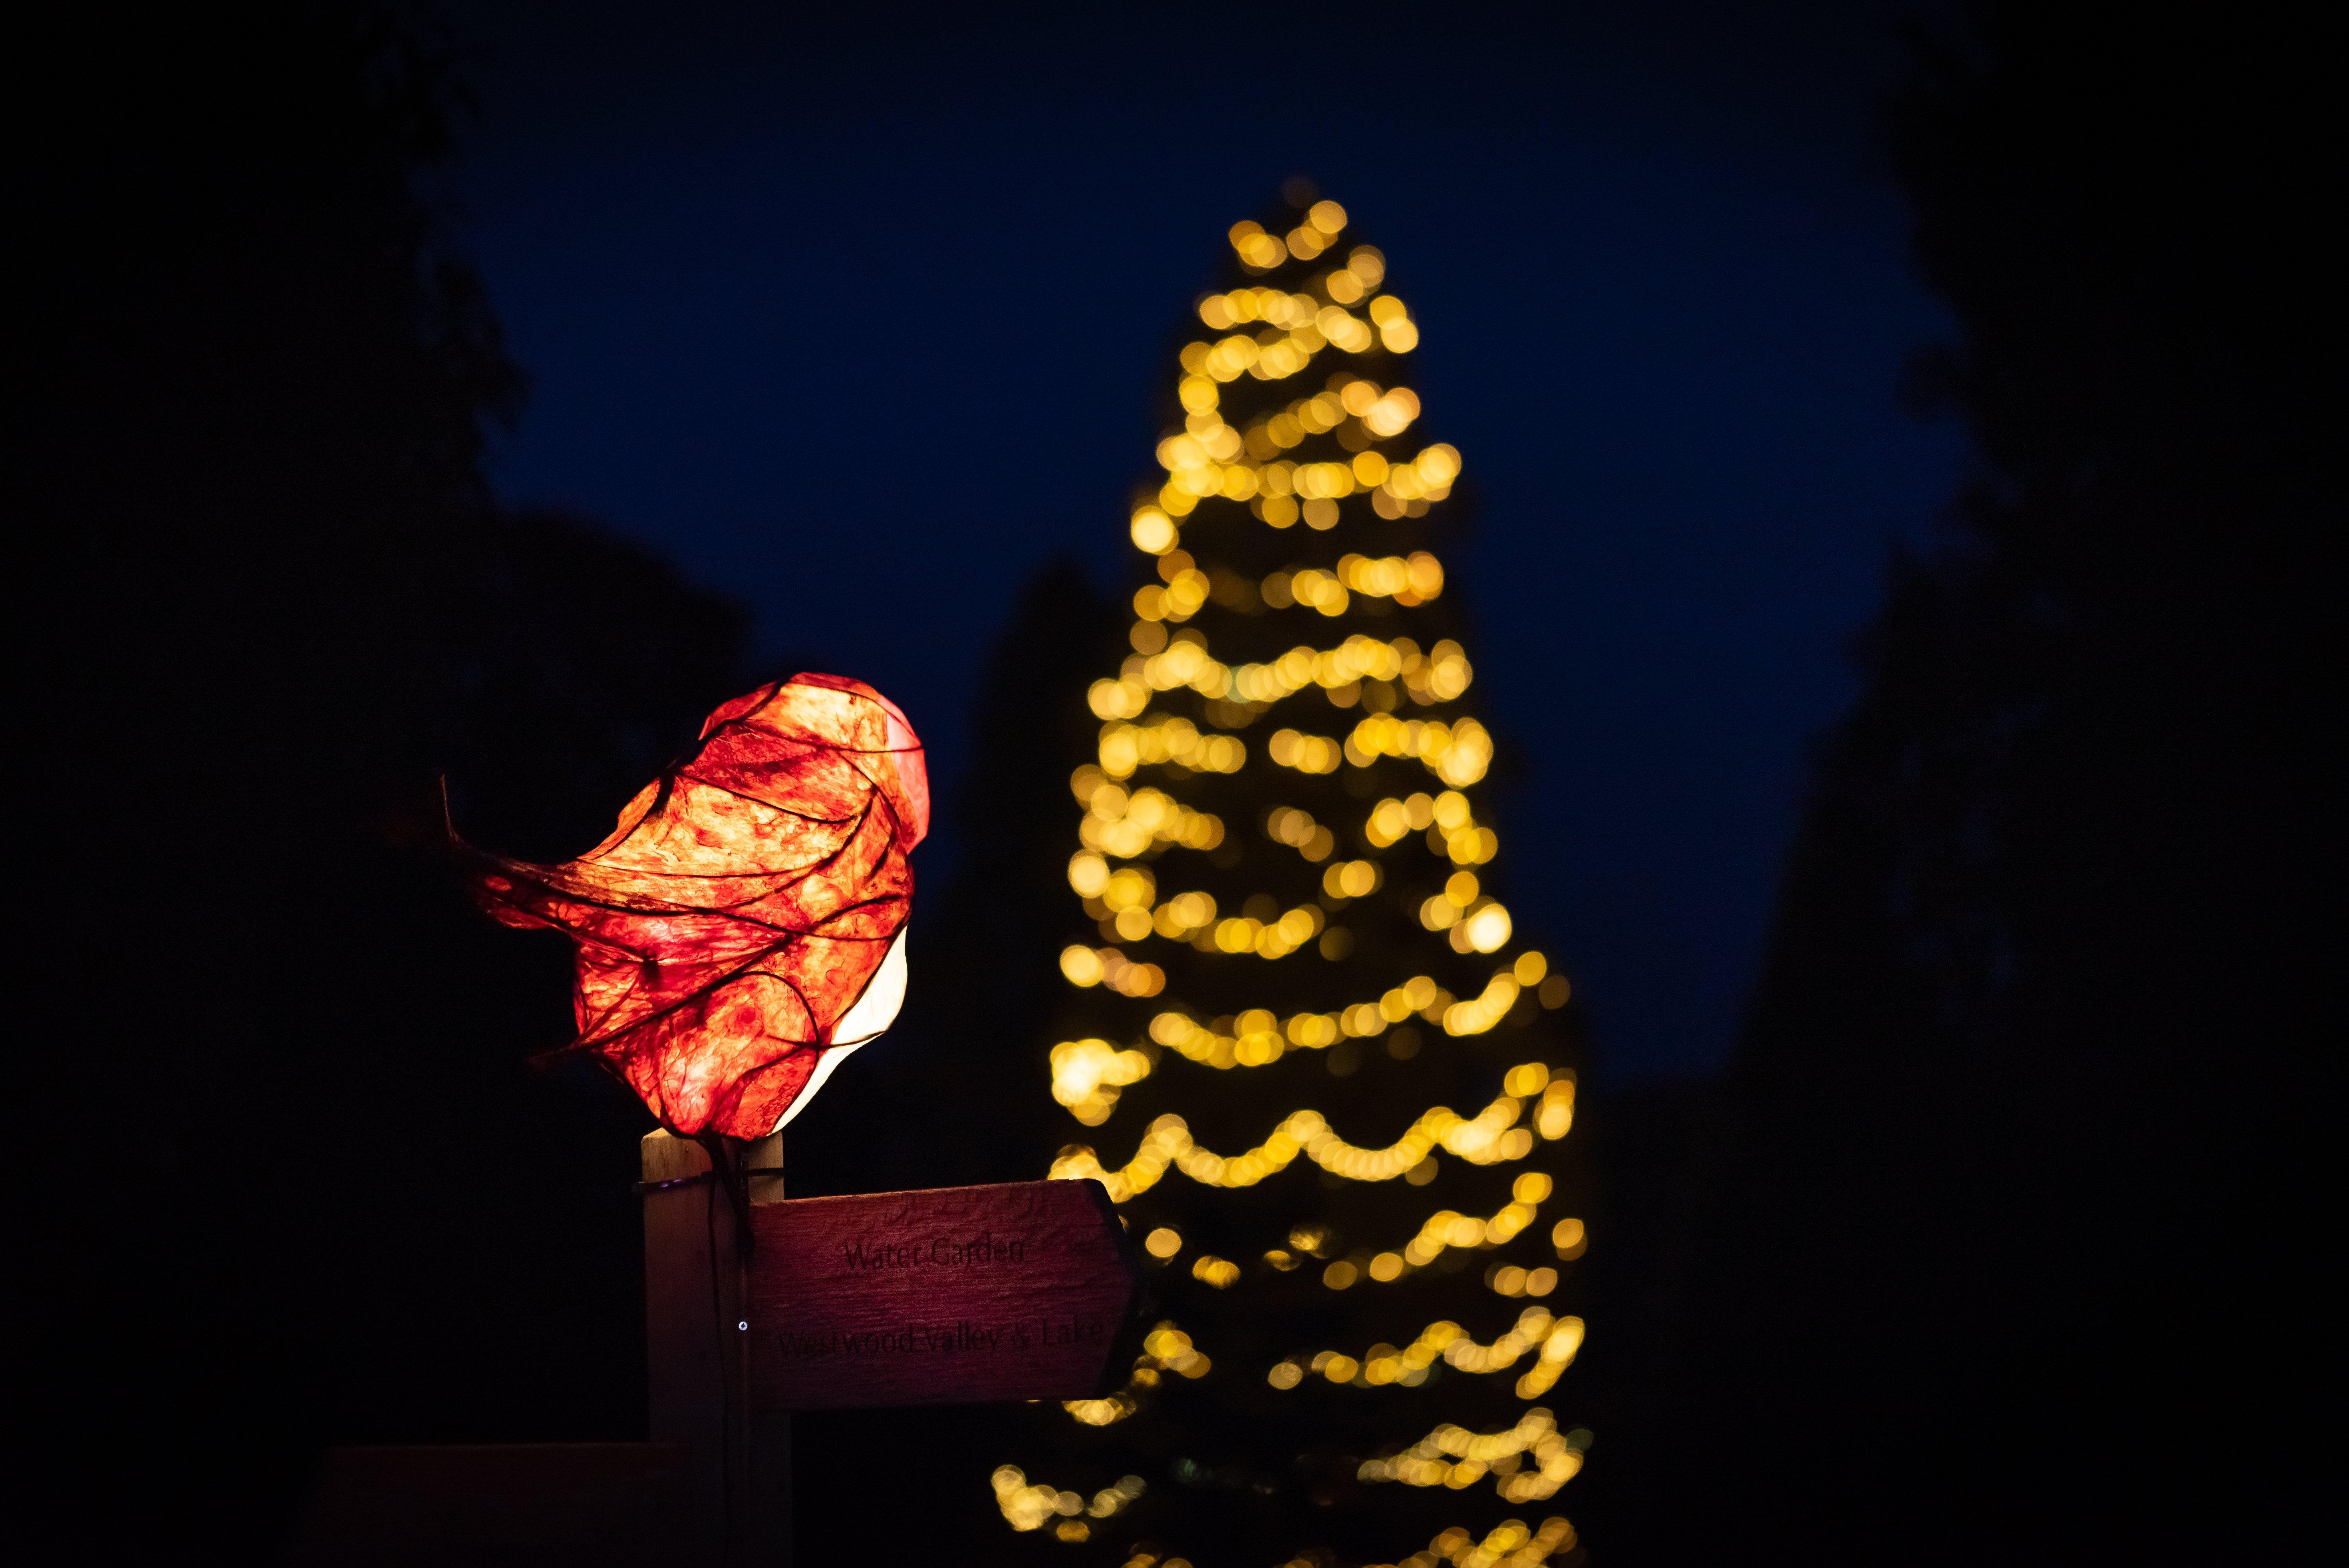 Festive lights. Credit: John White © RBG Kew